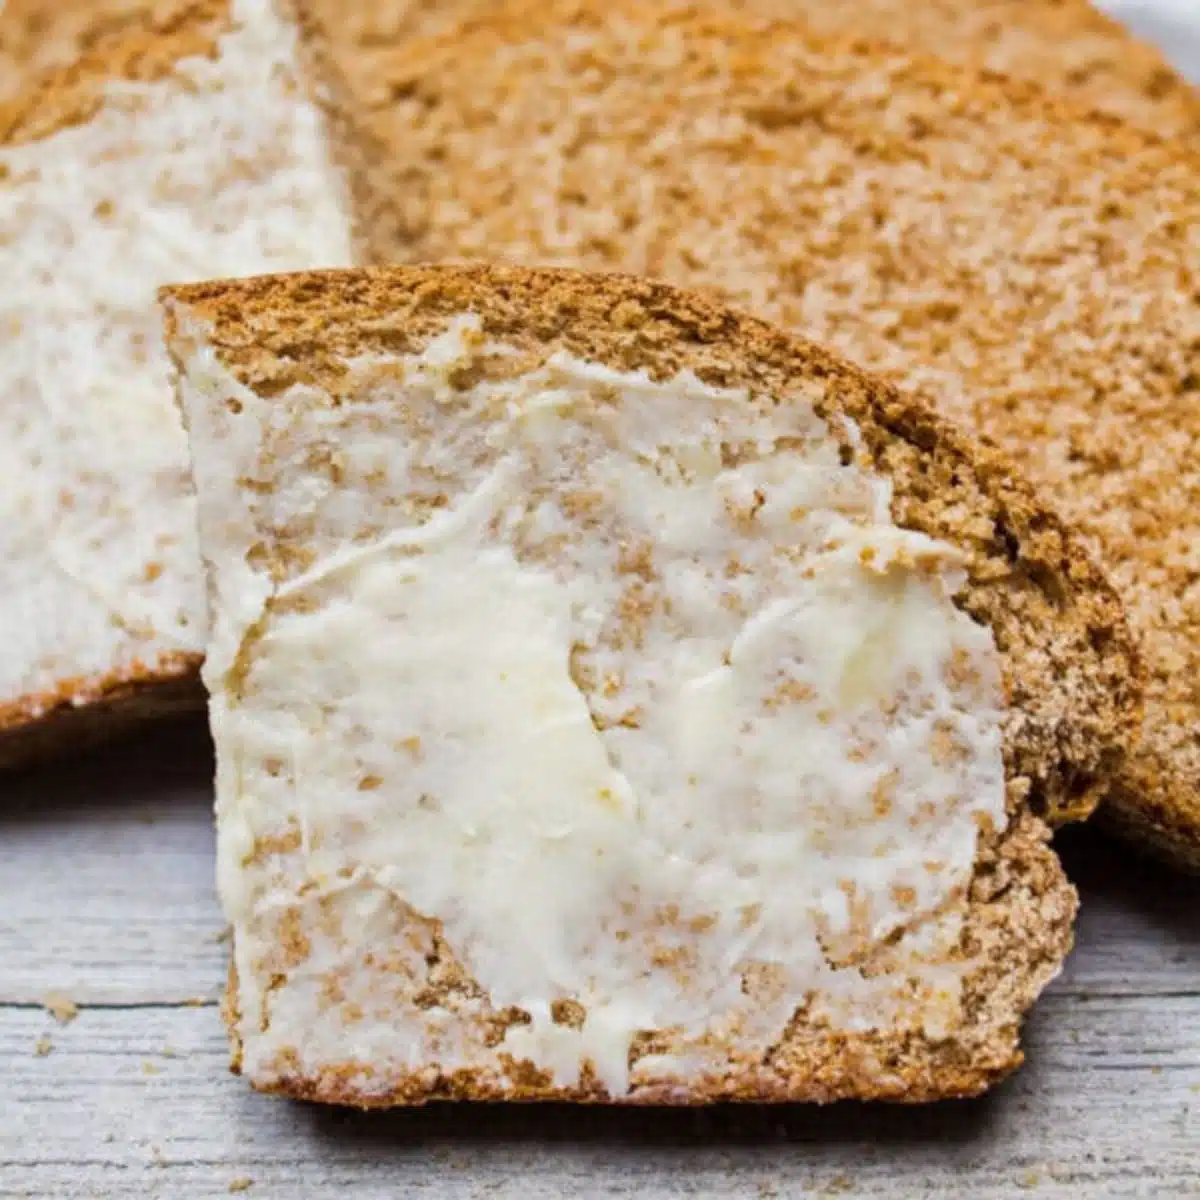 Immagine quadrata di pane integrale a fette con burro.